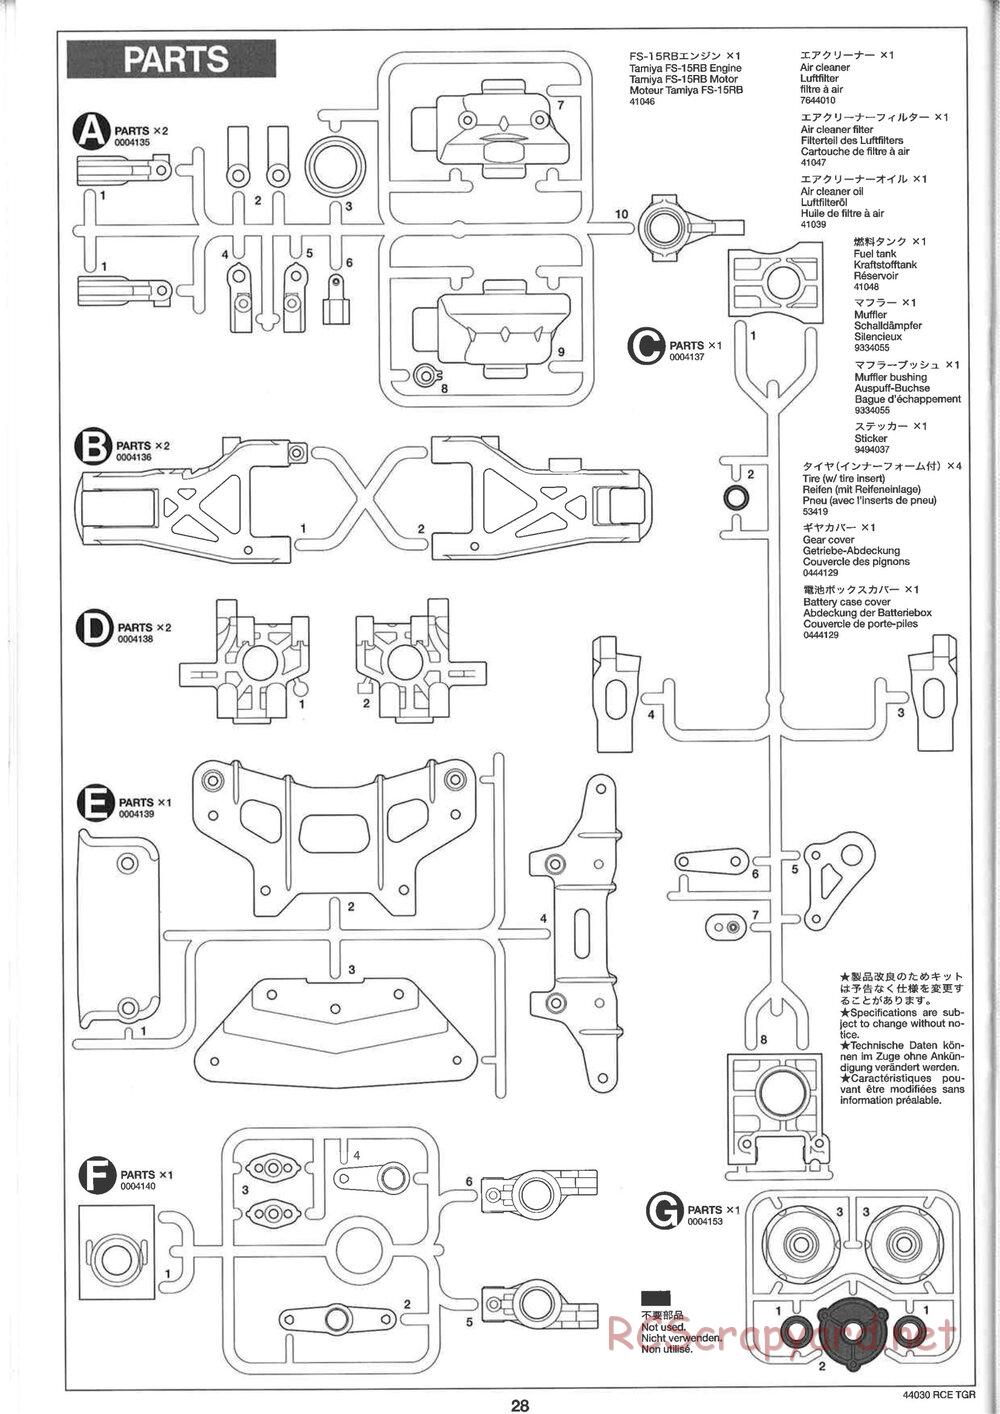 Tamiya - TGR Chassis - Manual - Page 28